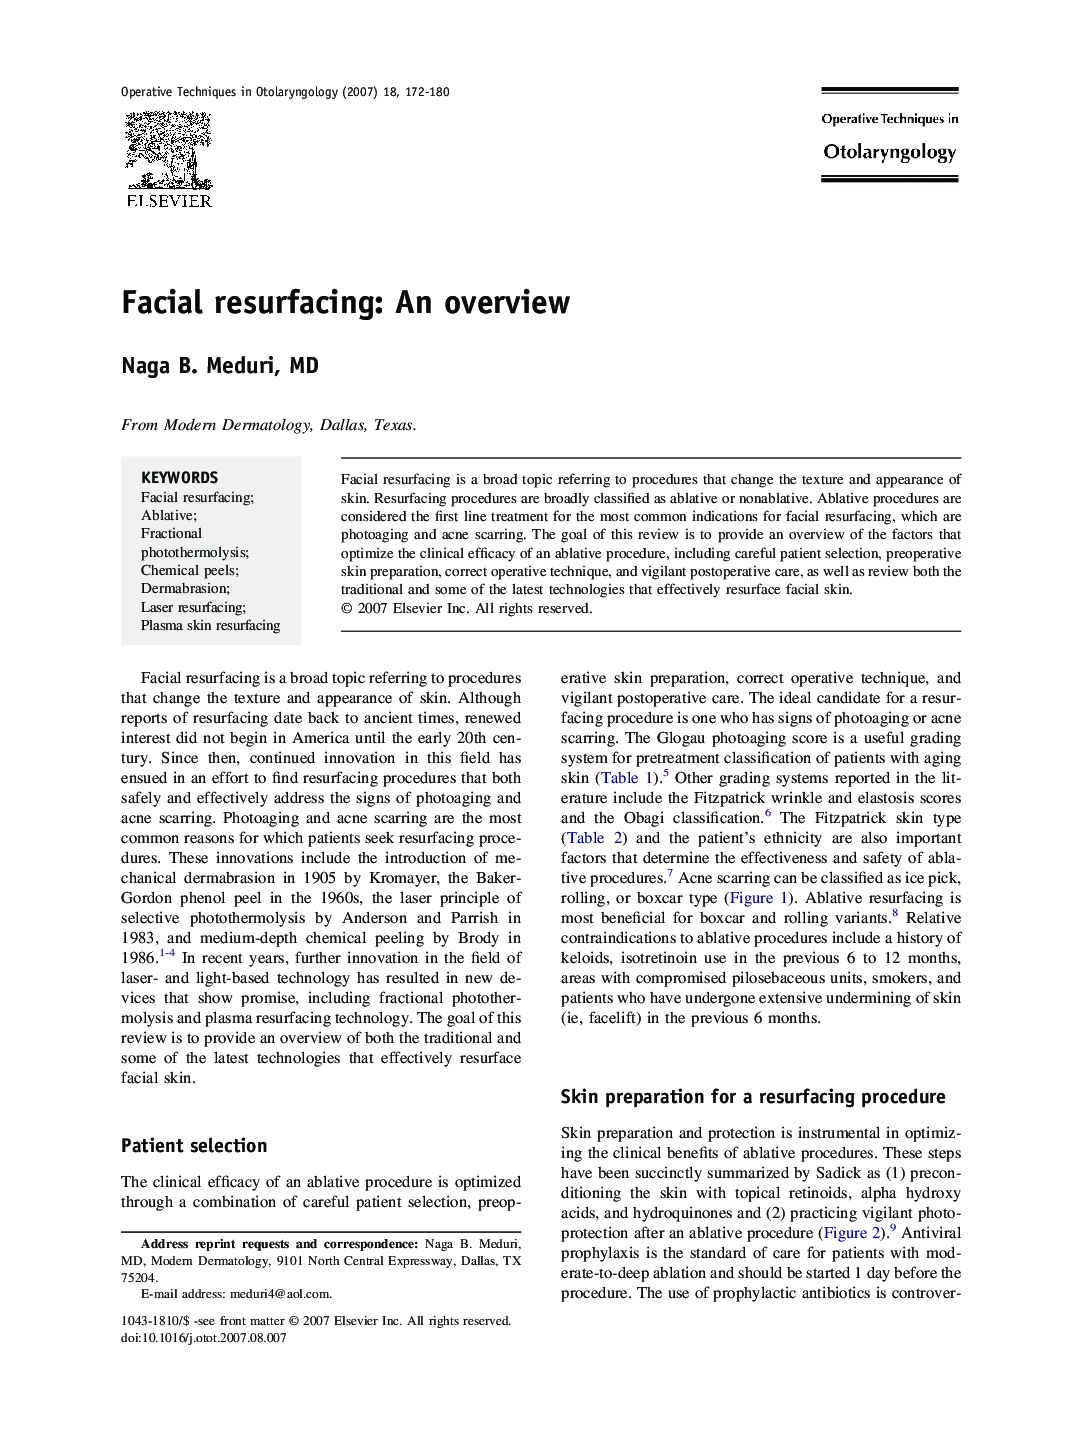 Facial resurfacing: An overview